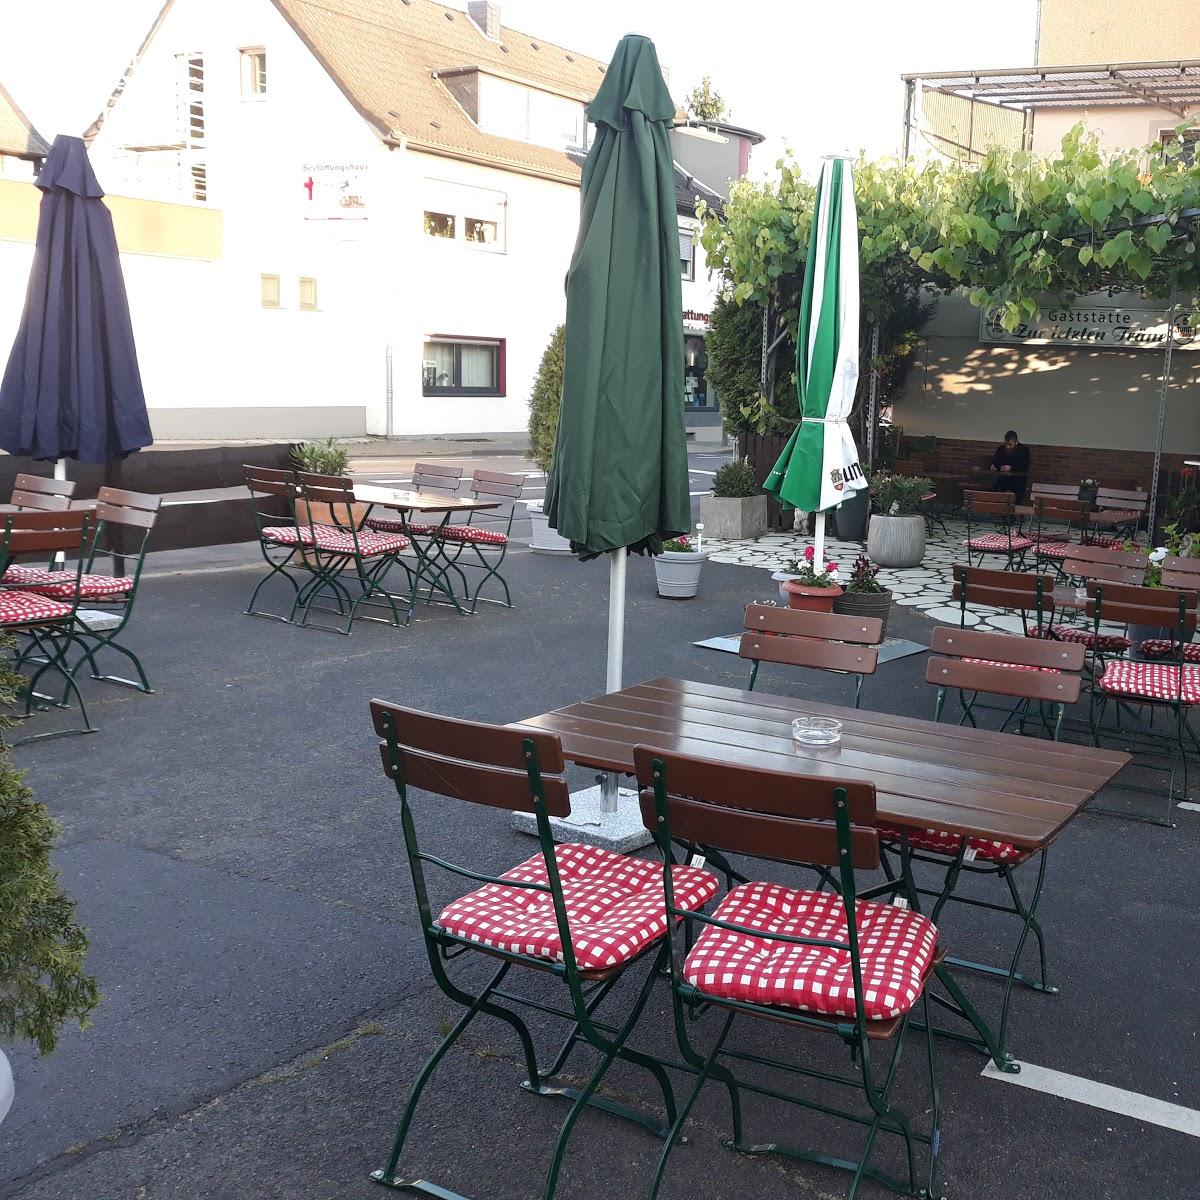 Restaurant "Zur Letzten Träne" in Siegburg